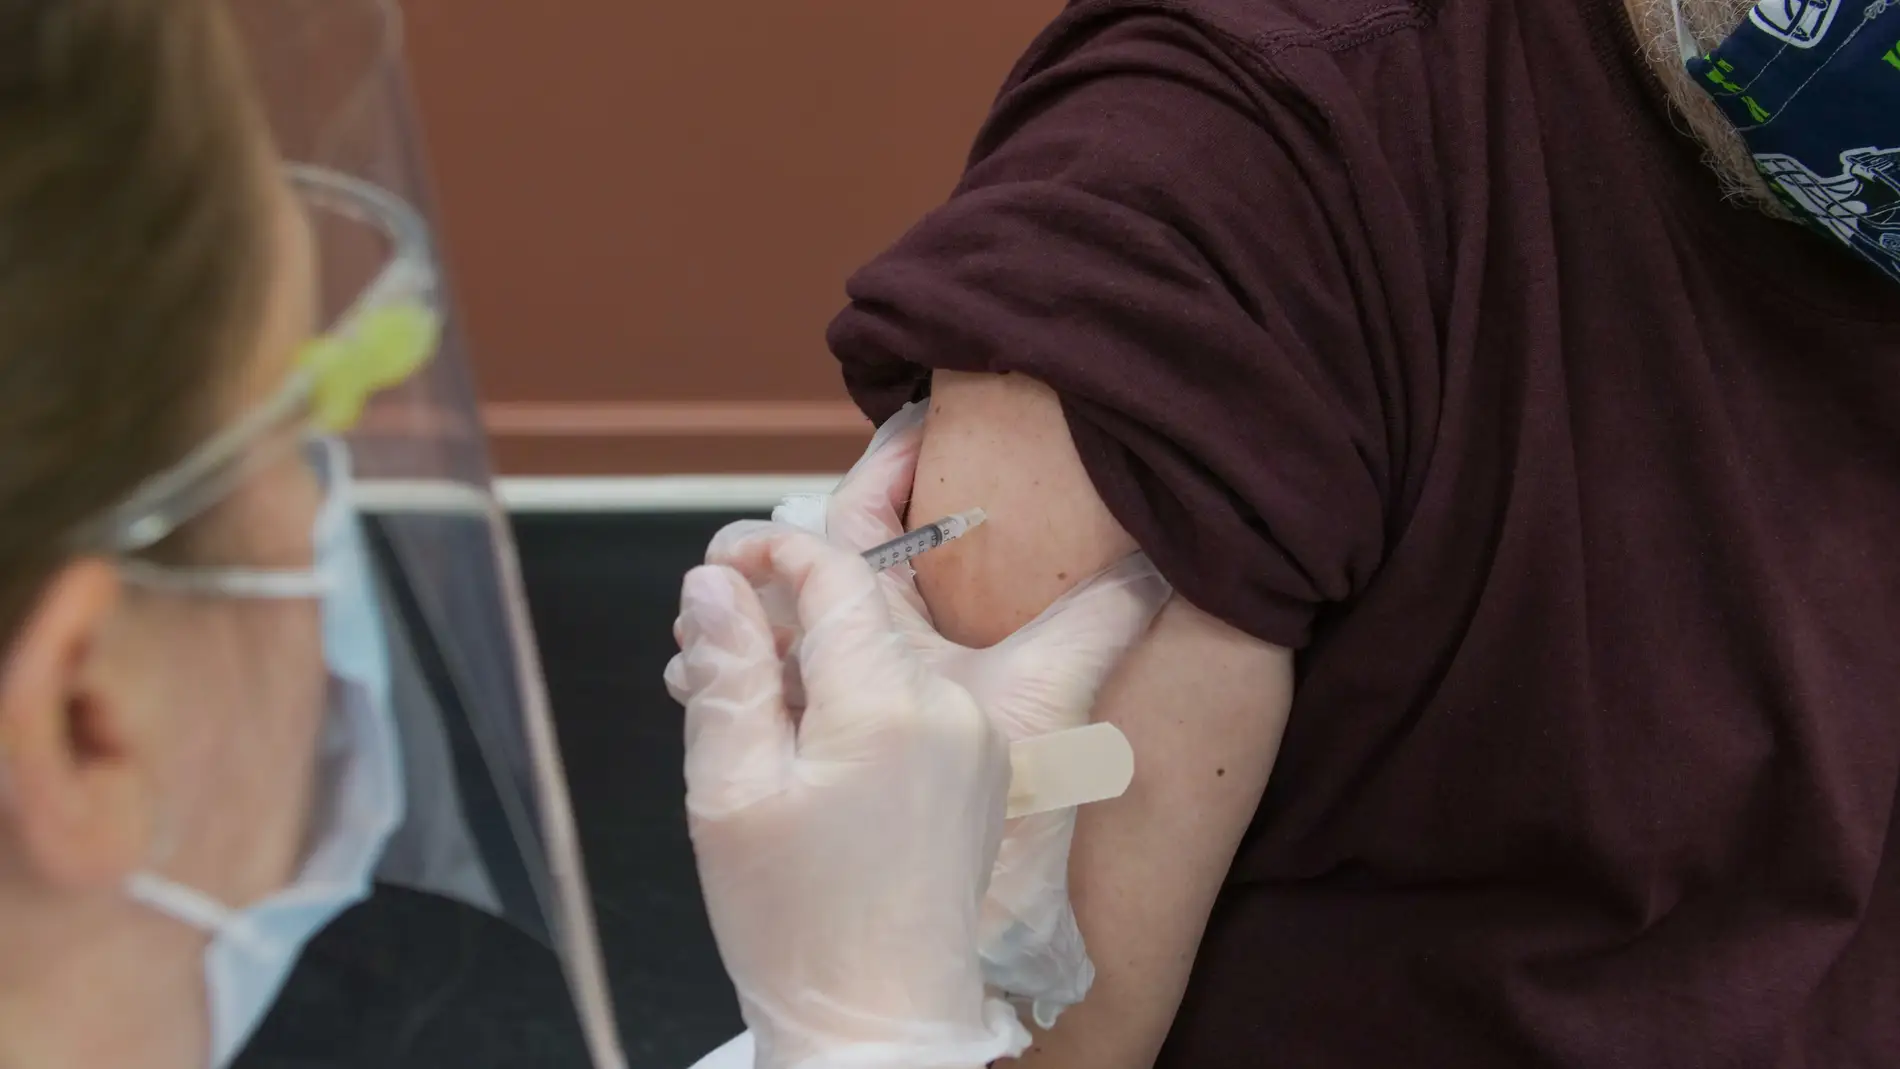 Un hombre recibe una vacuna en una imagen de archivo/ Unsplash